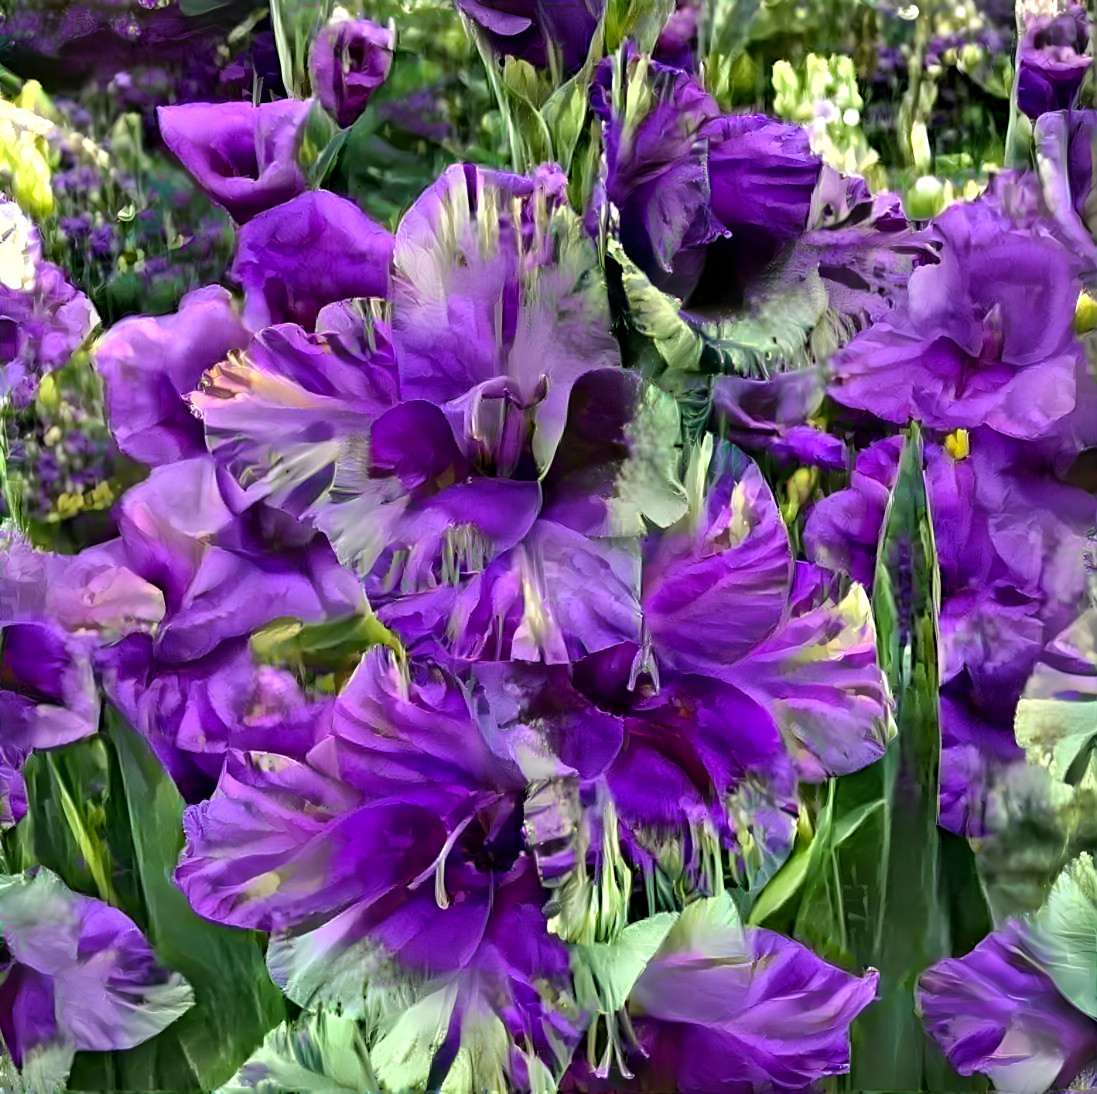 Violet blooms